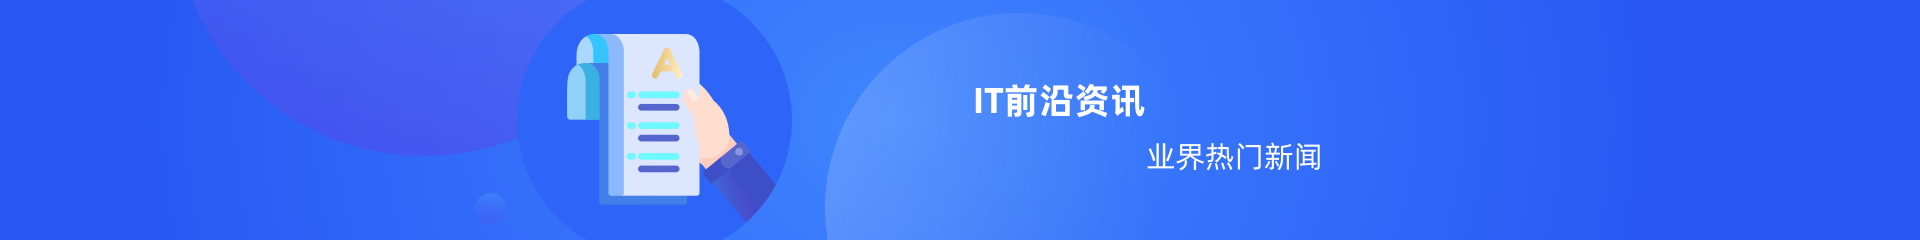 中培伟业IT资讯频道